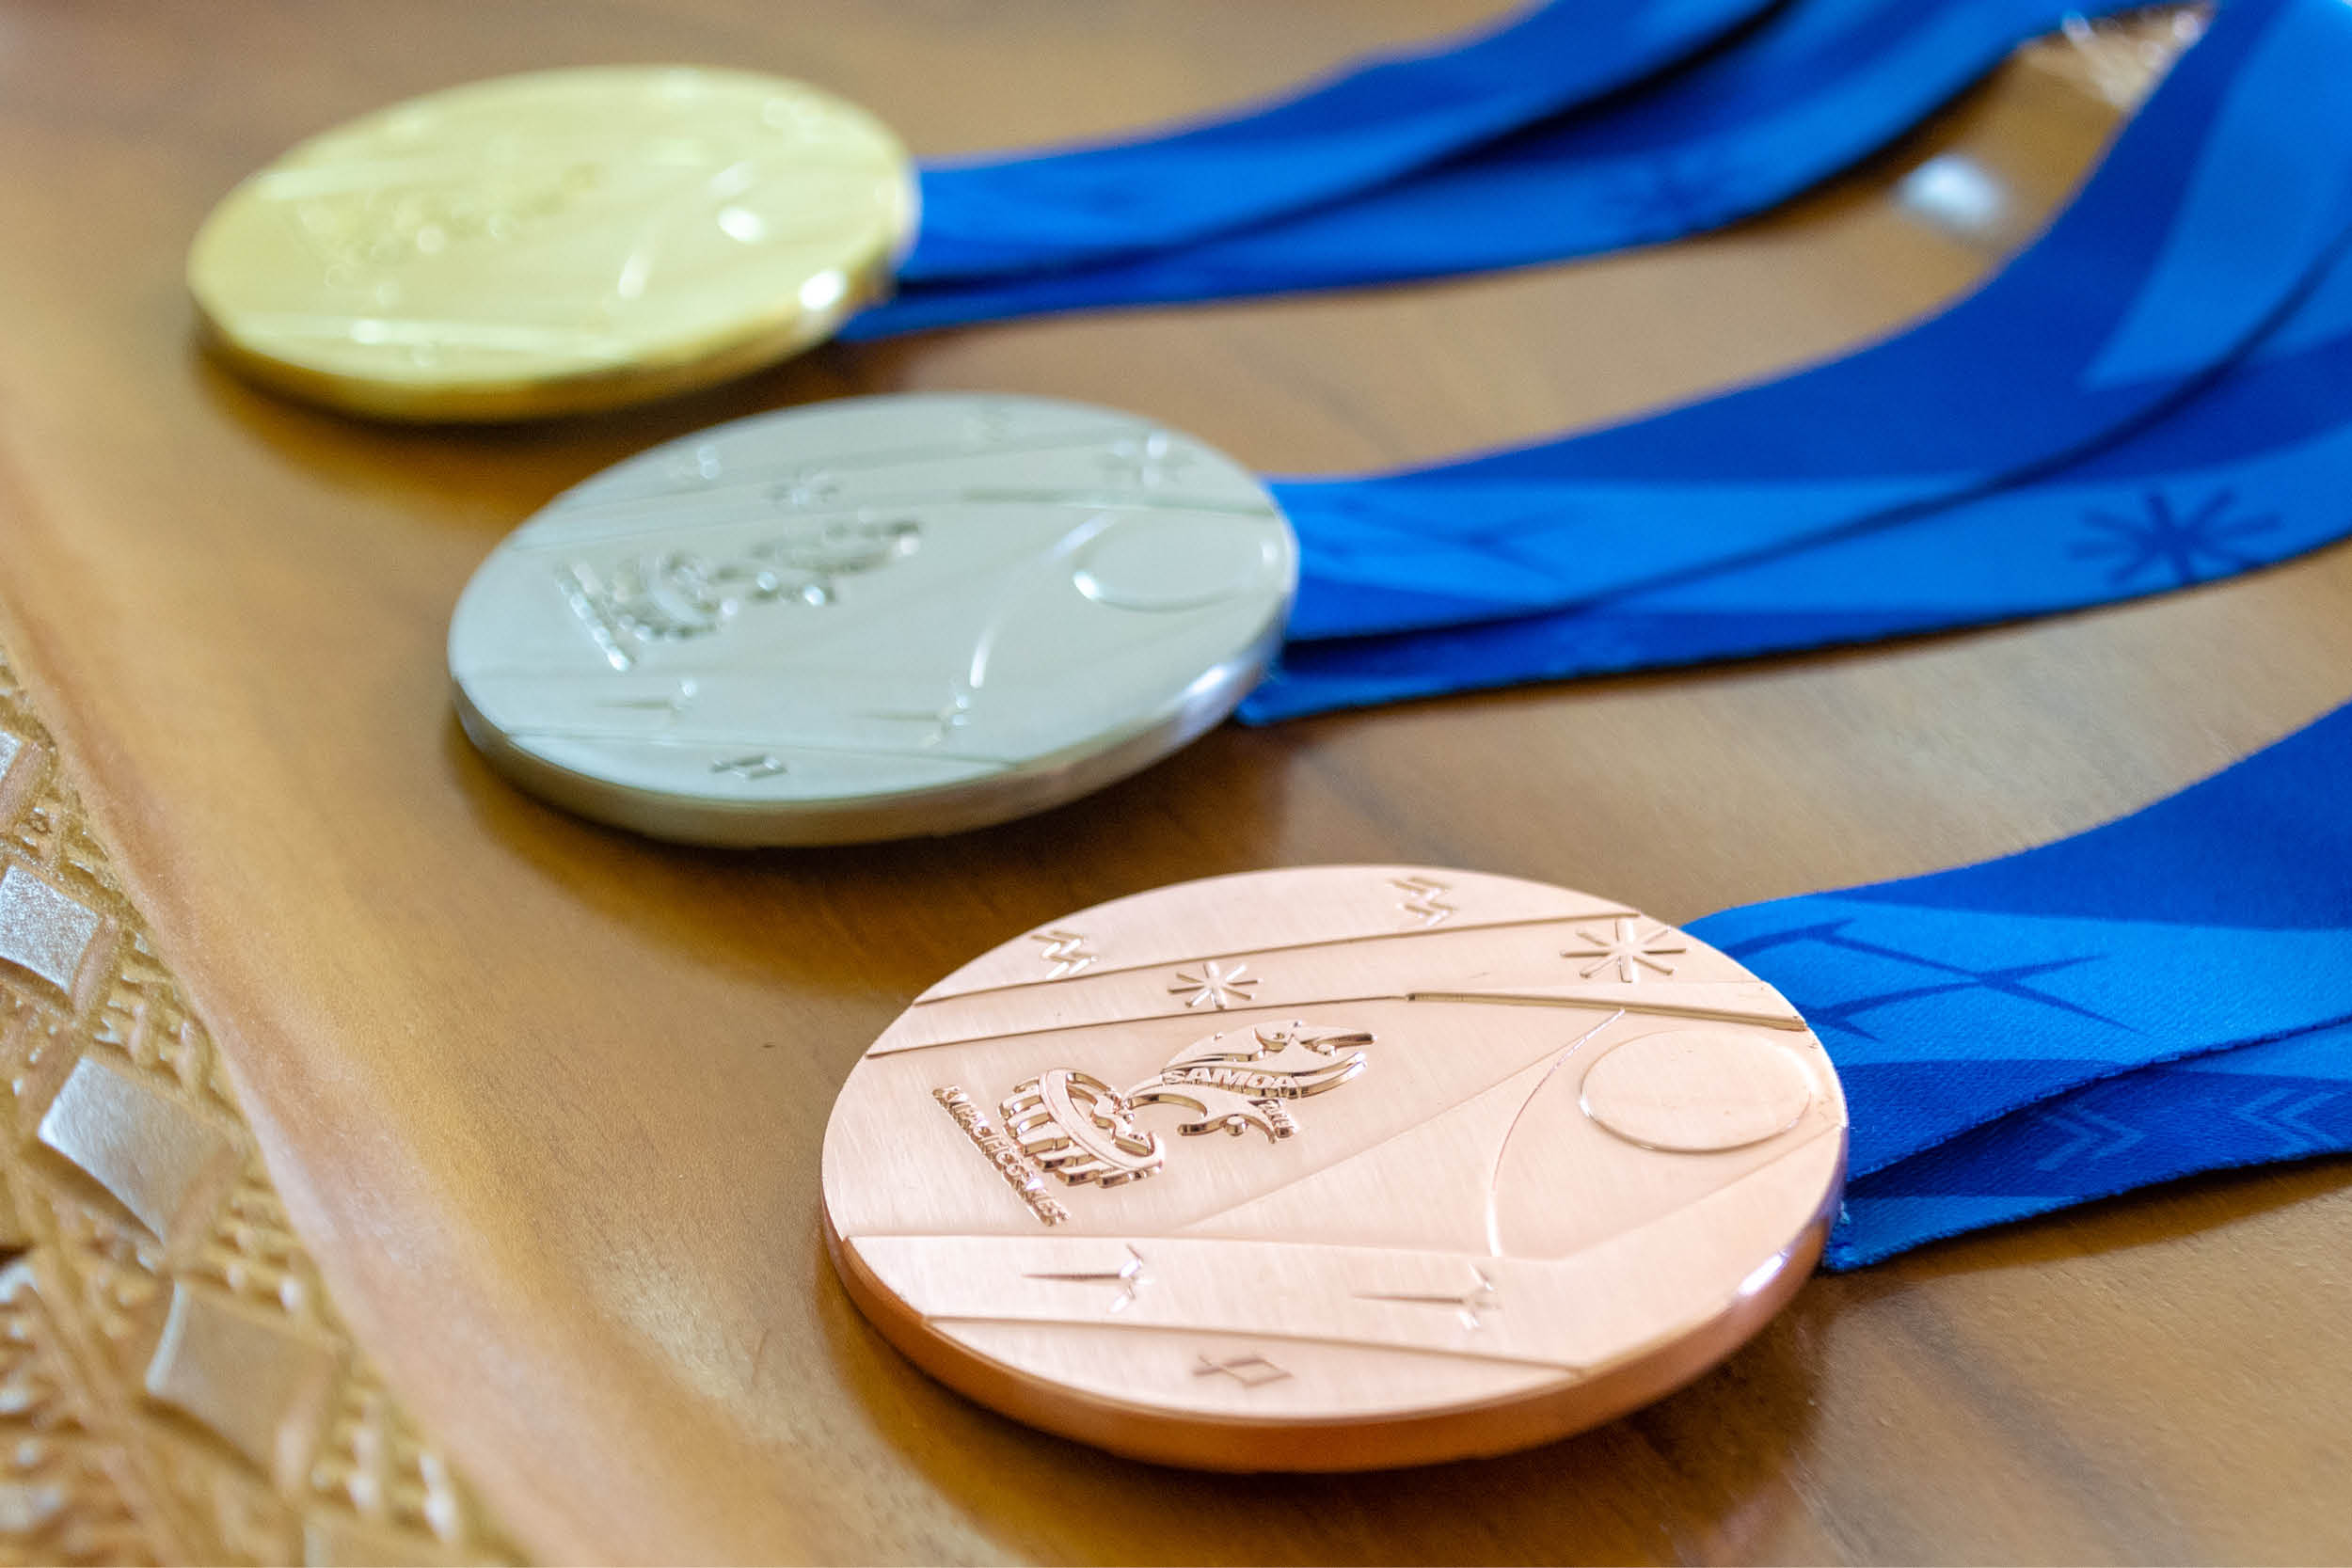 PG2019 Medals Website